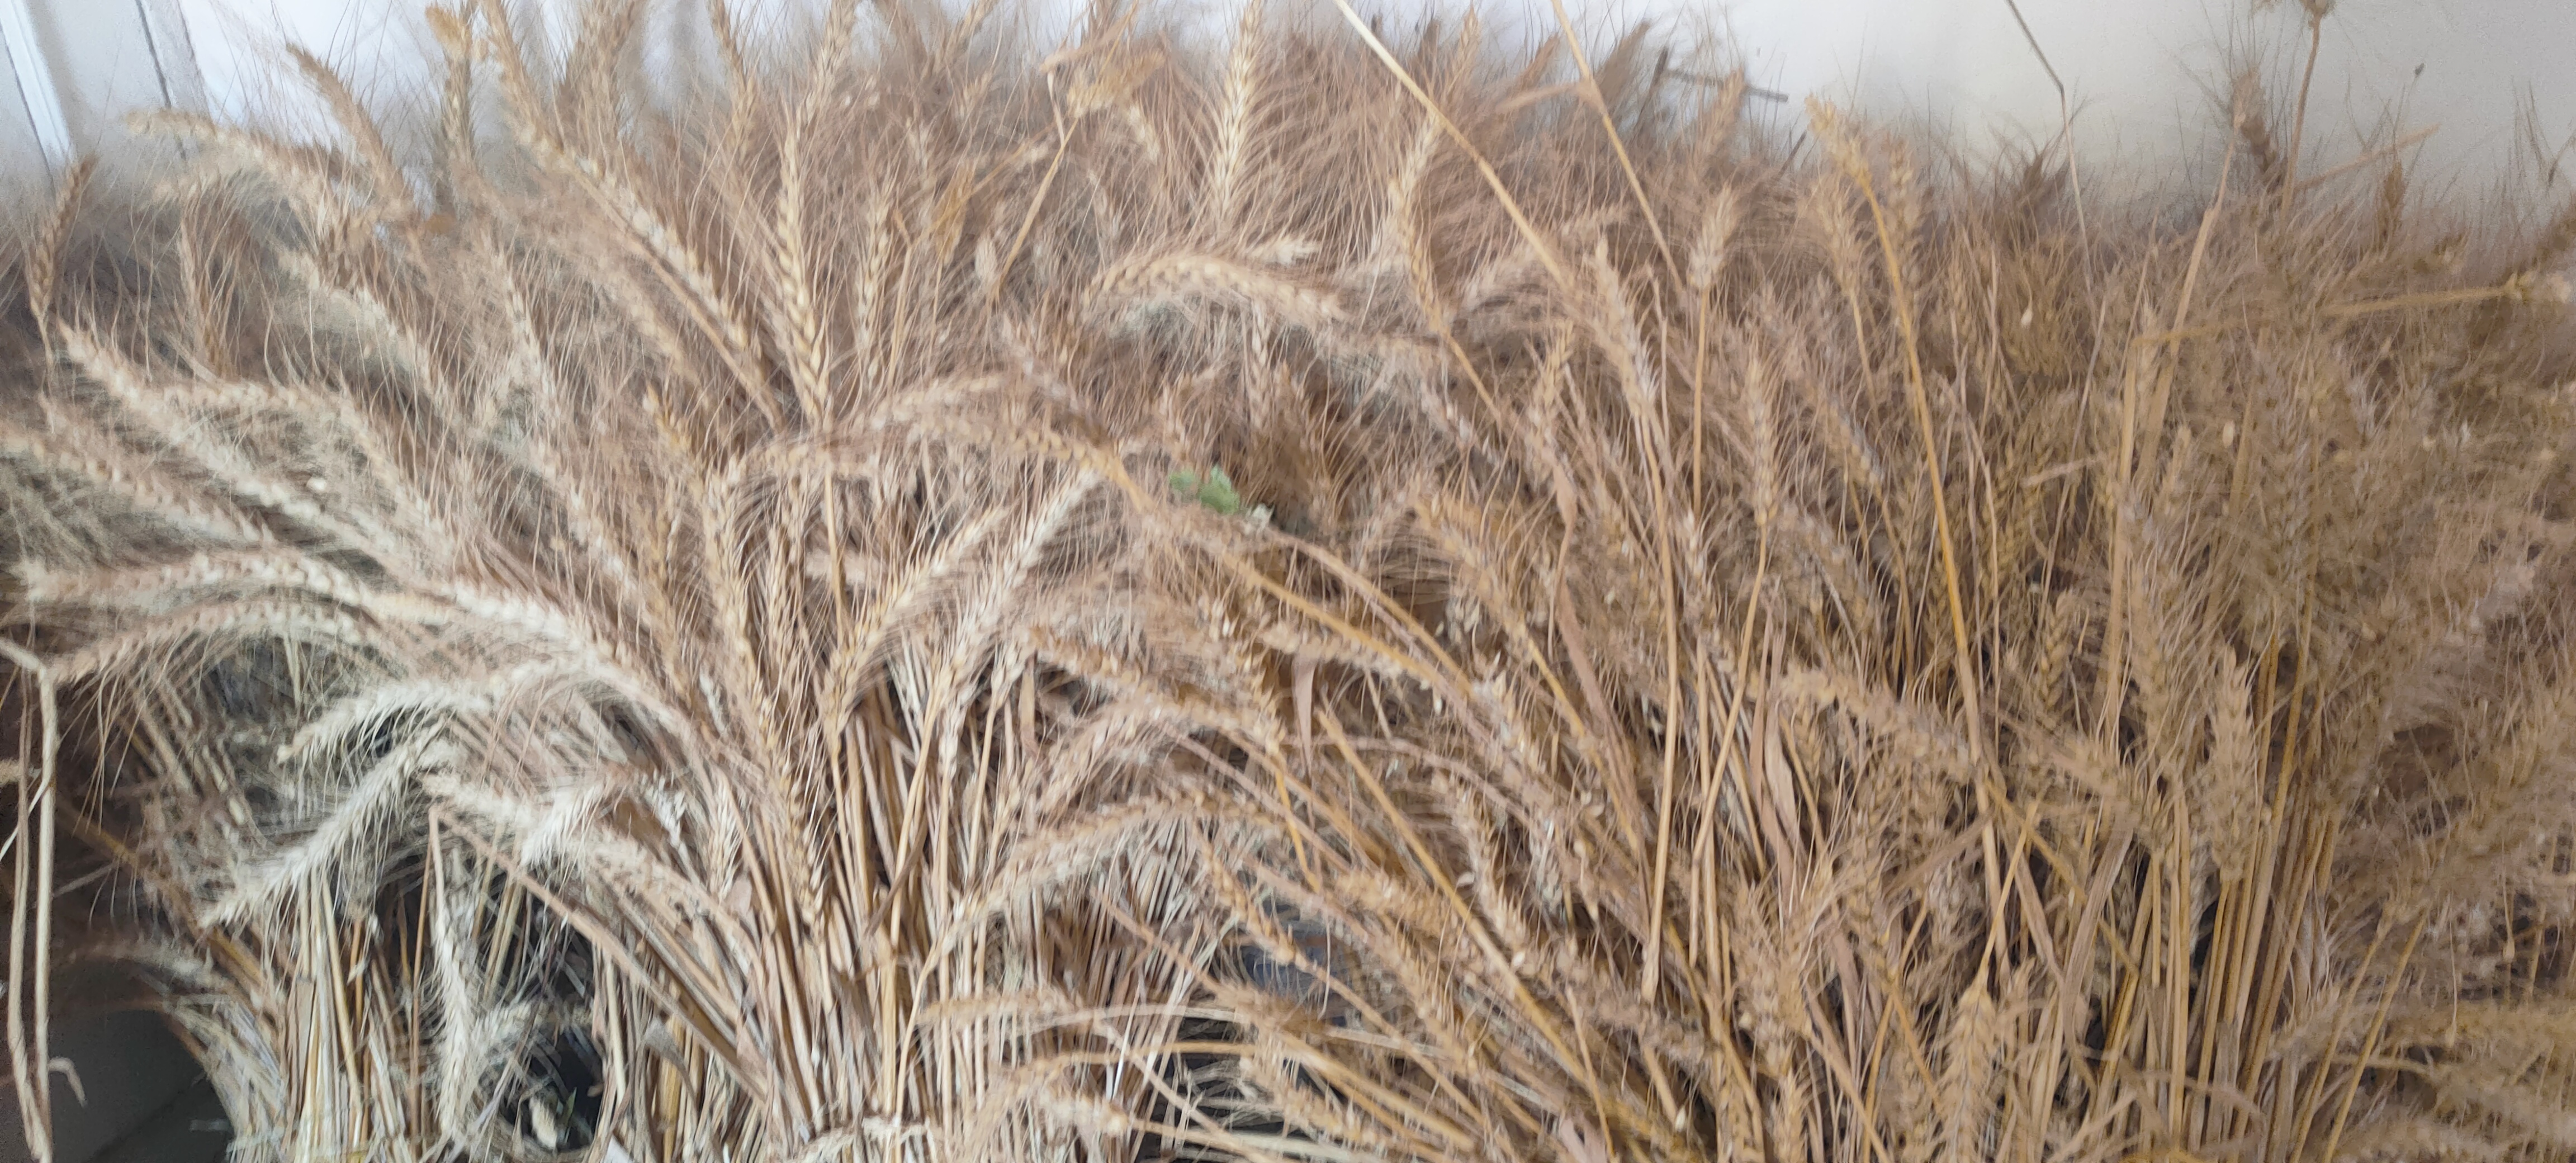 أستاذ زراعة الزقازيق ينجح في استباط طفرات من القمح مقاومة عالية للملوحة (5)